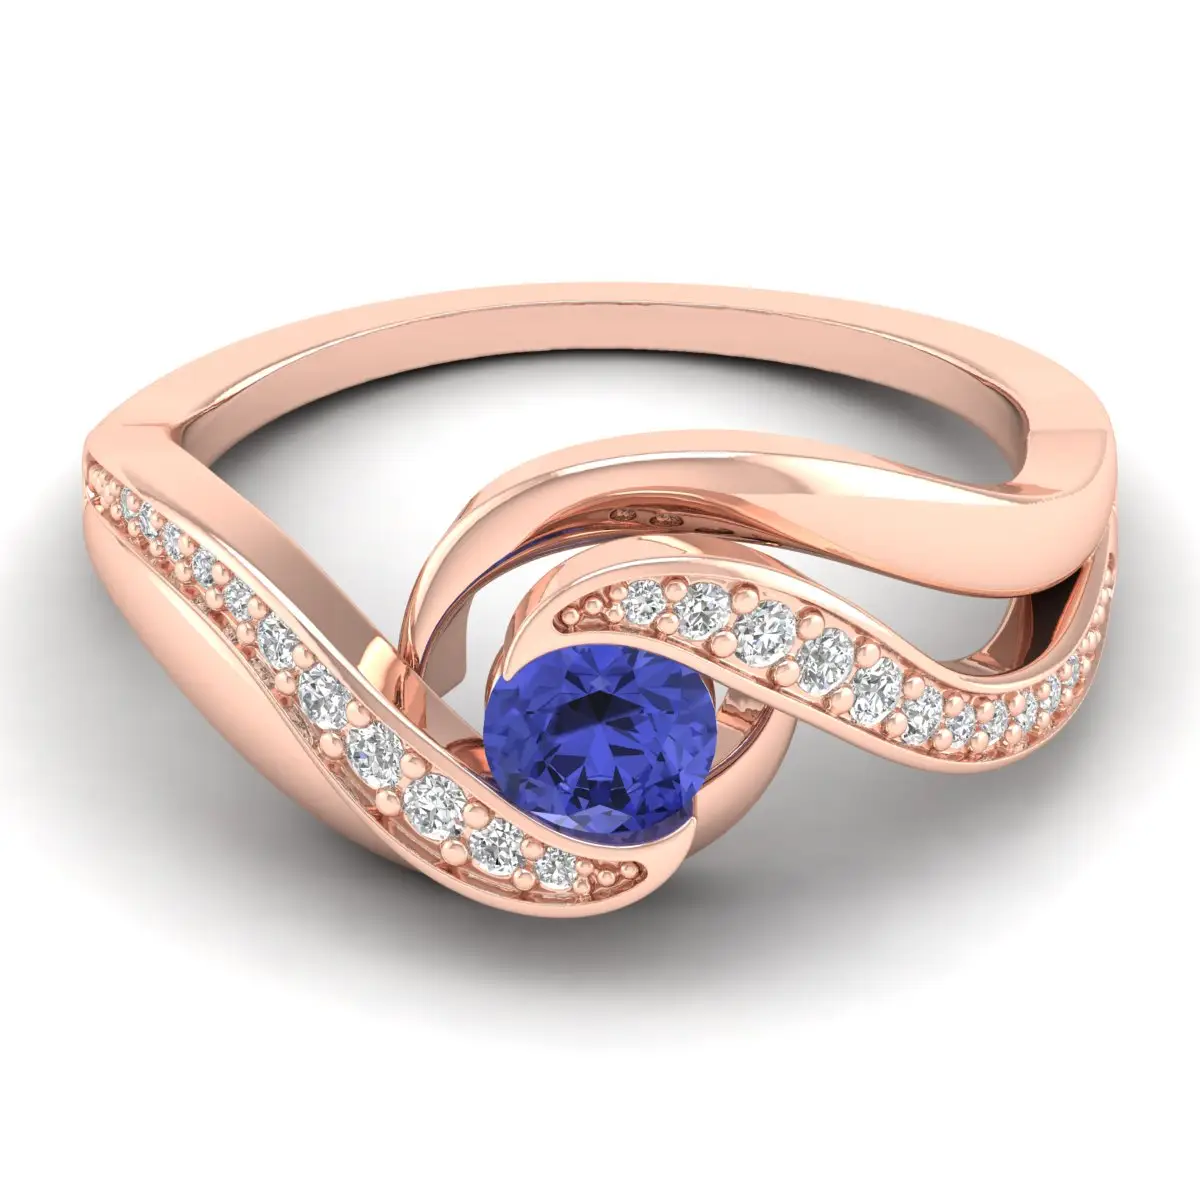 Kustomisasi perhiasan profesional 14K emas biru Royal Tanzanite Moissanite indah yang tak tertandingi cincin perhiasan pernikahan mewah